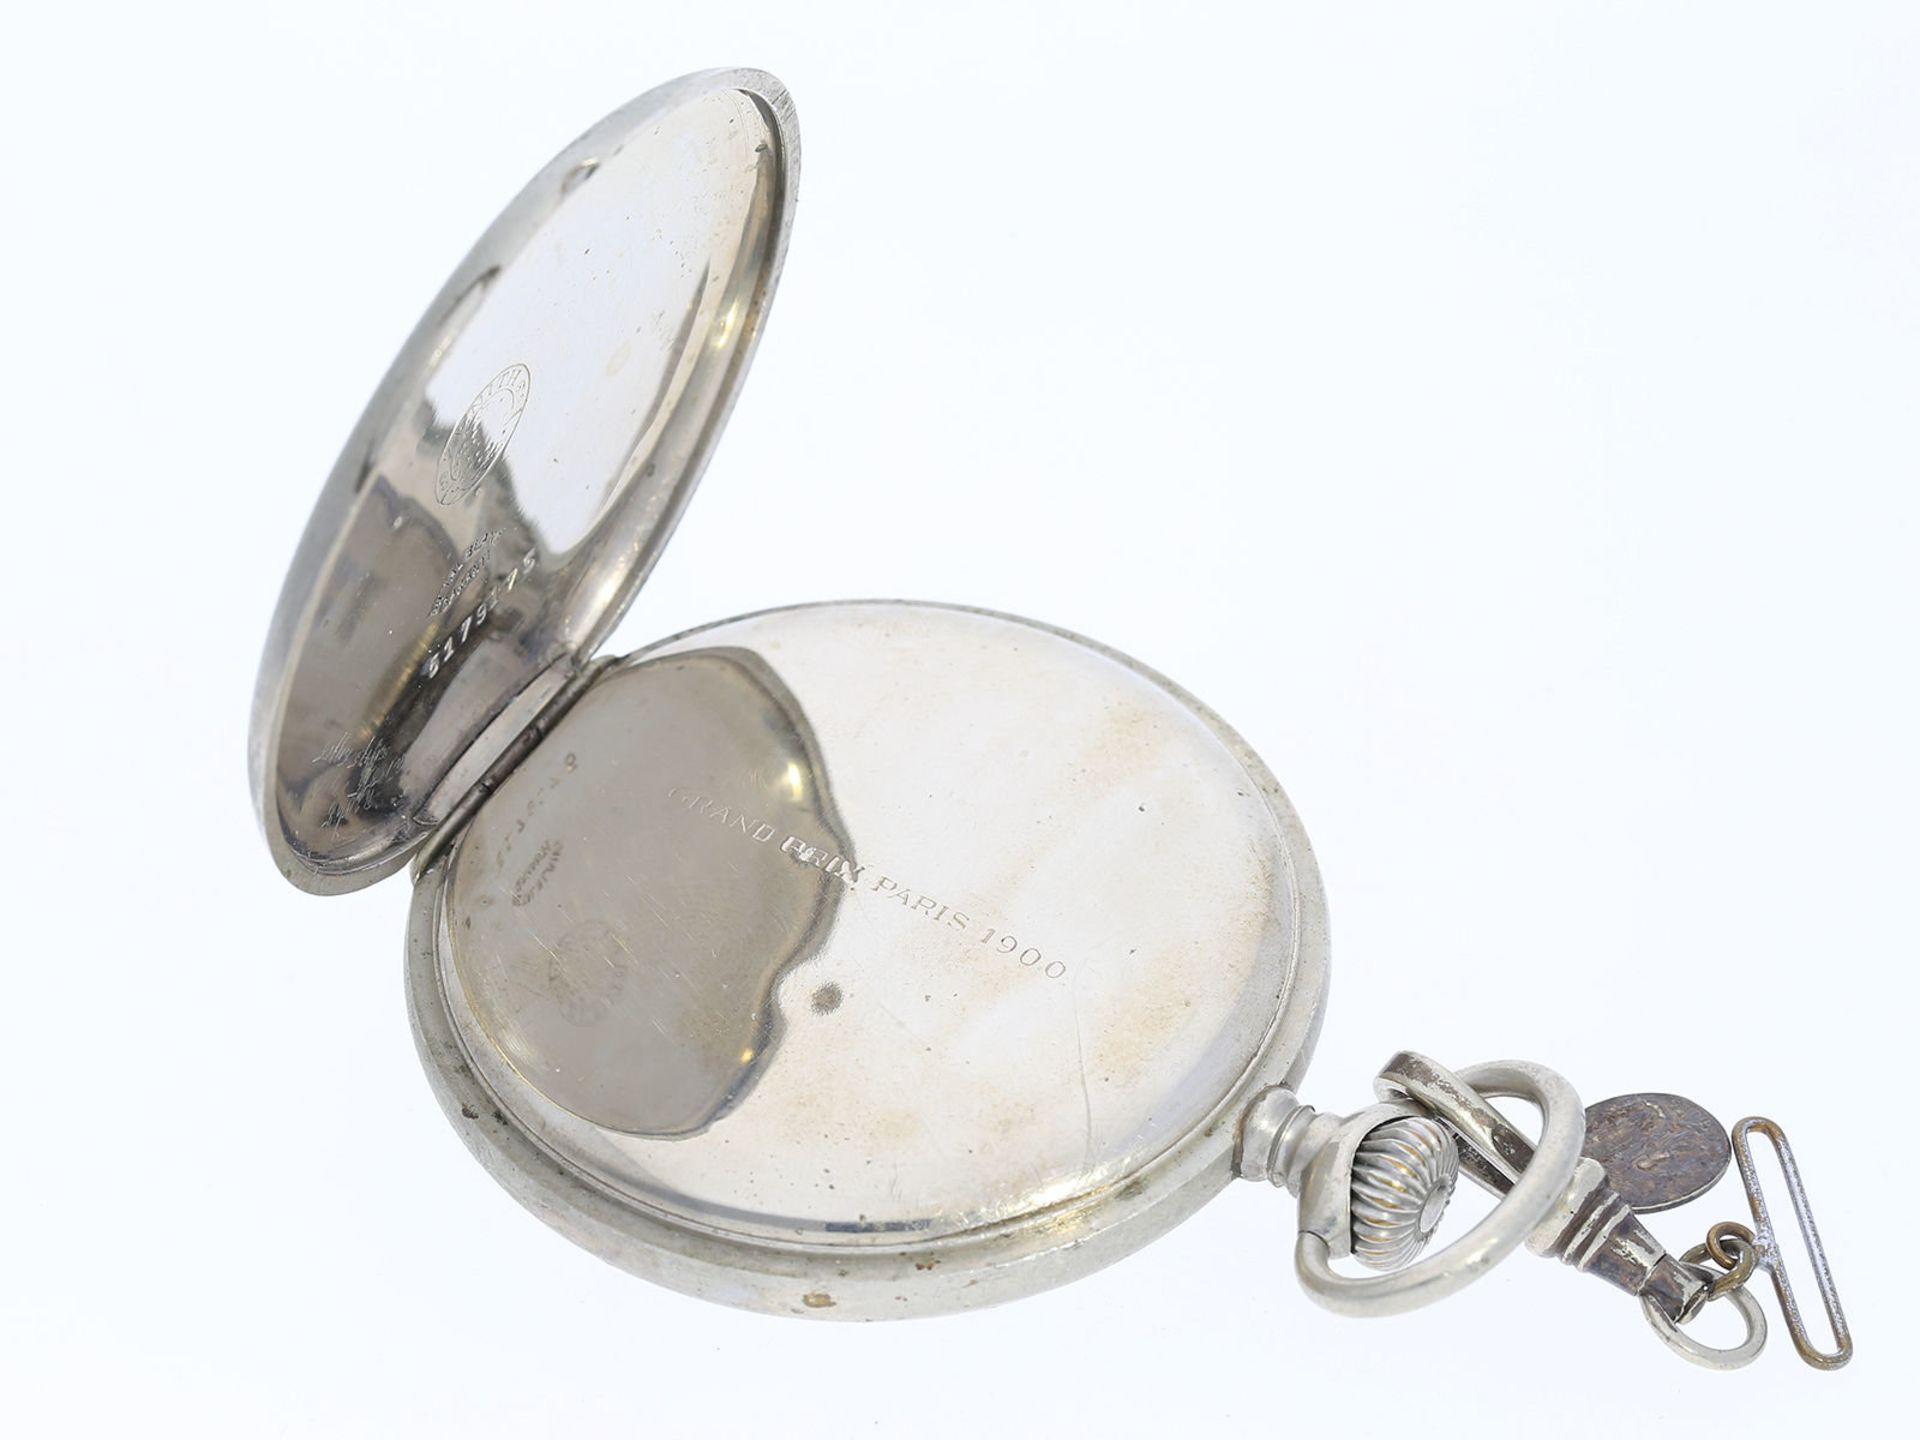 Taschenuhr: feine und sehr seltene Zenith Taschenuhr im Nickelgehäuse, mit seltenem Lederetui, ca. - Bild 3 aus 3